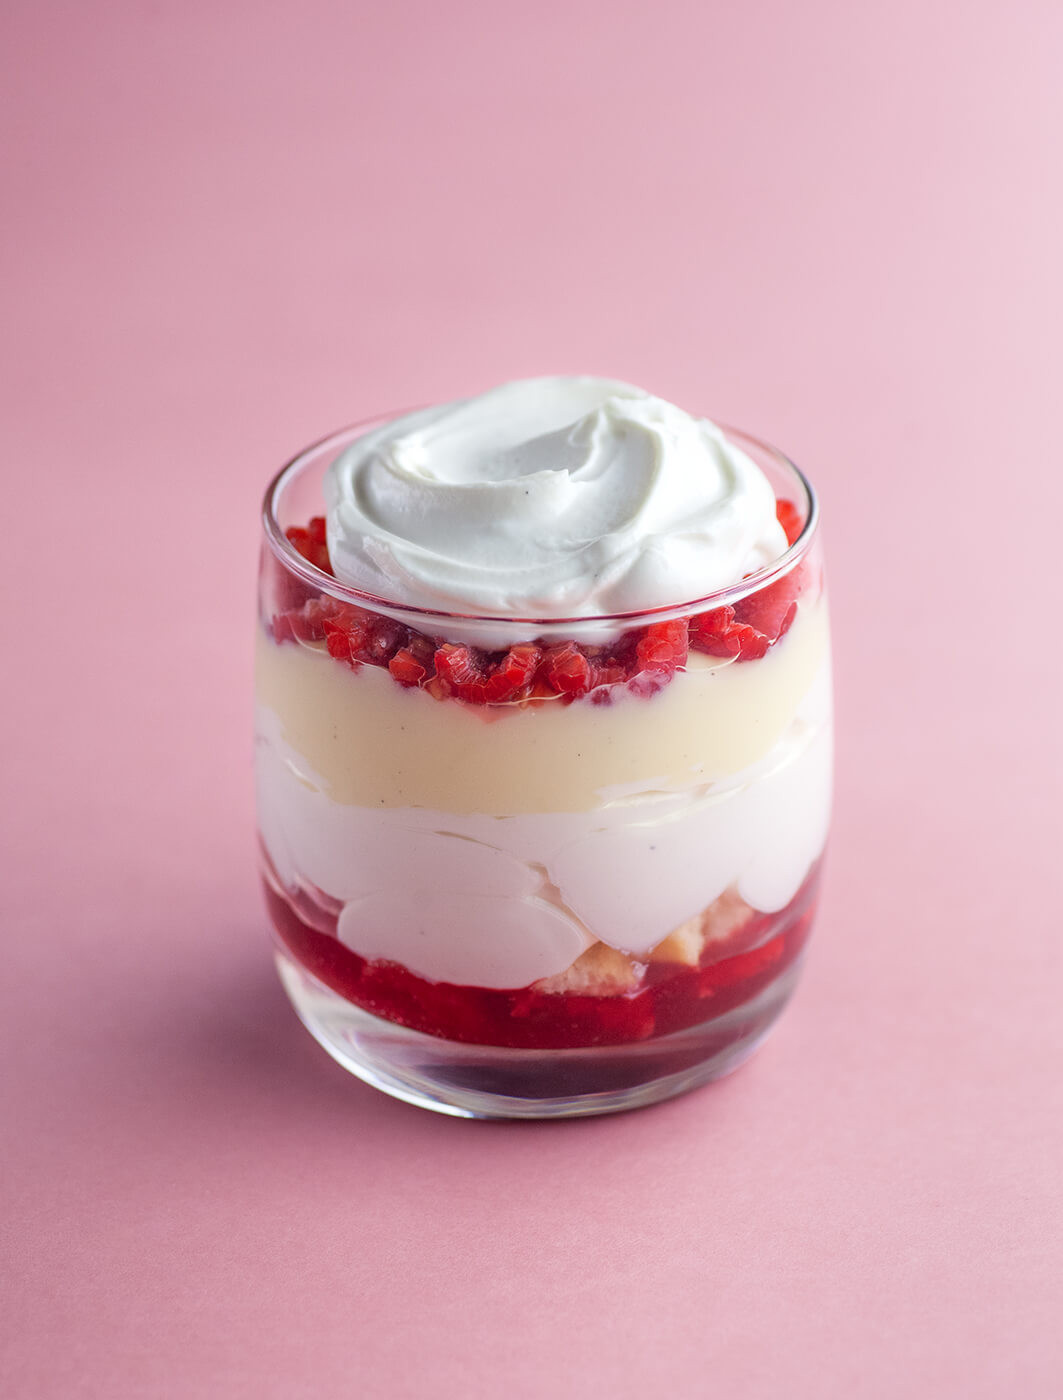 Trifle - angielski deser warstwowy.